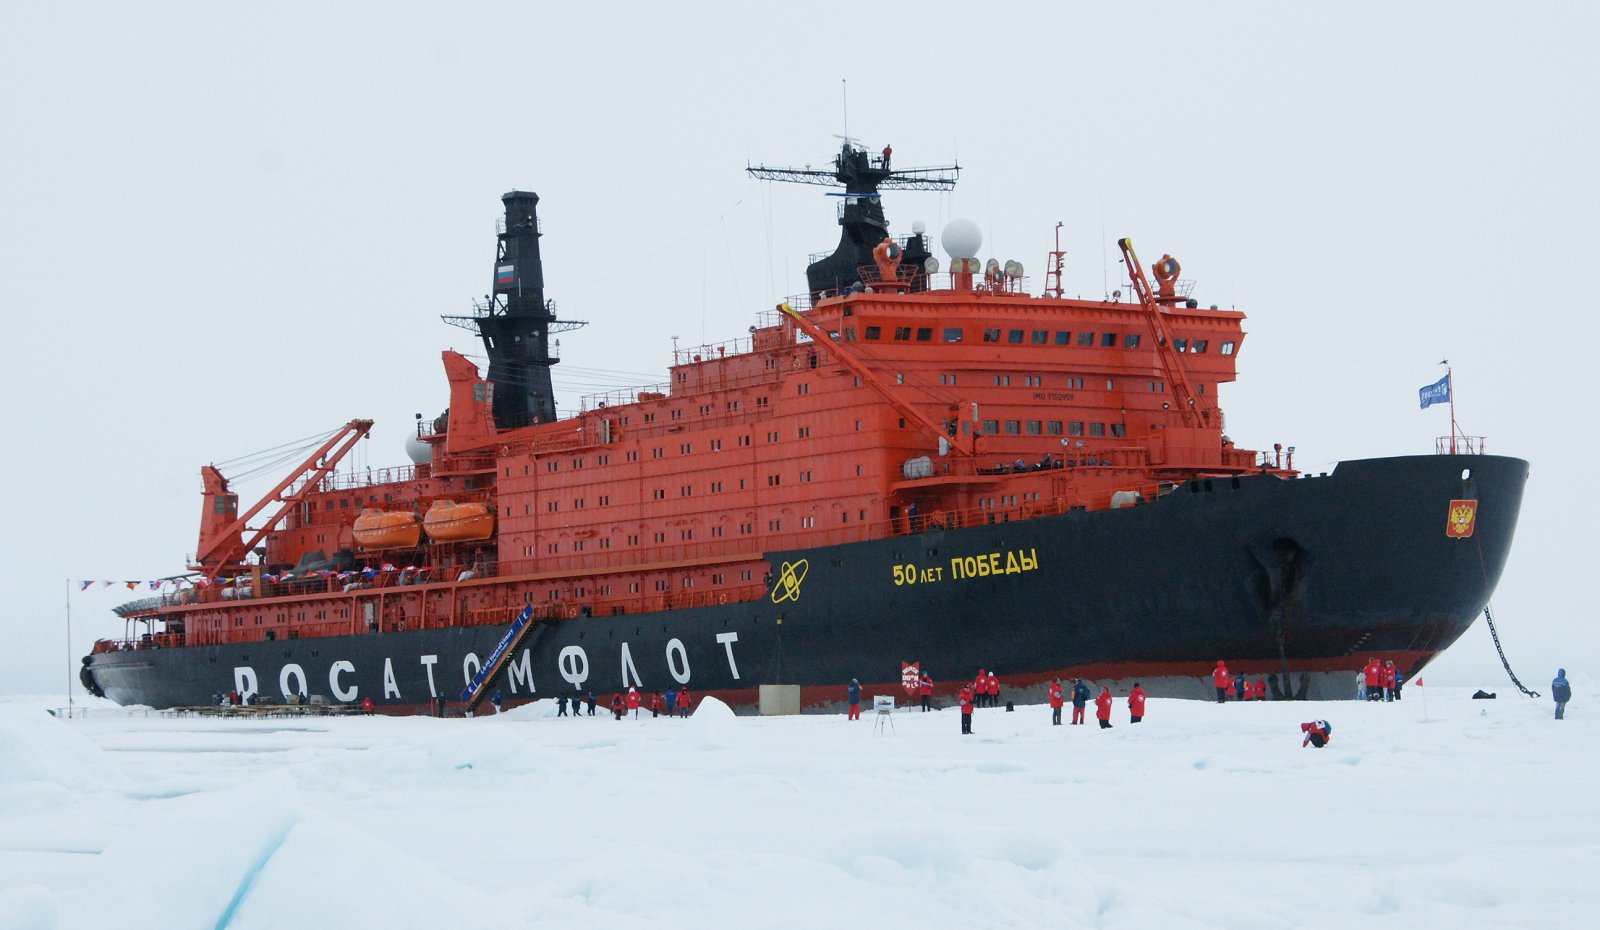 ابتکار مسیر تجاری قطب شمال روسیه در تمام طول سال